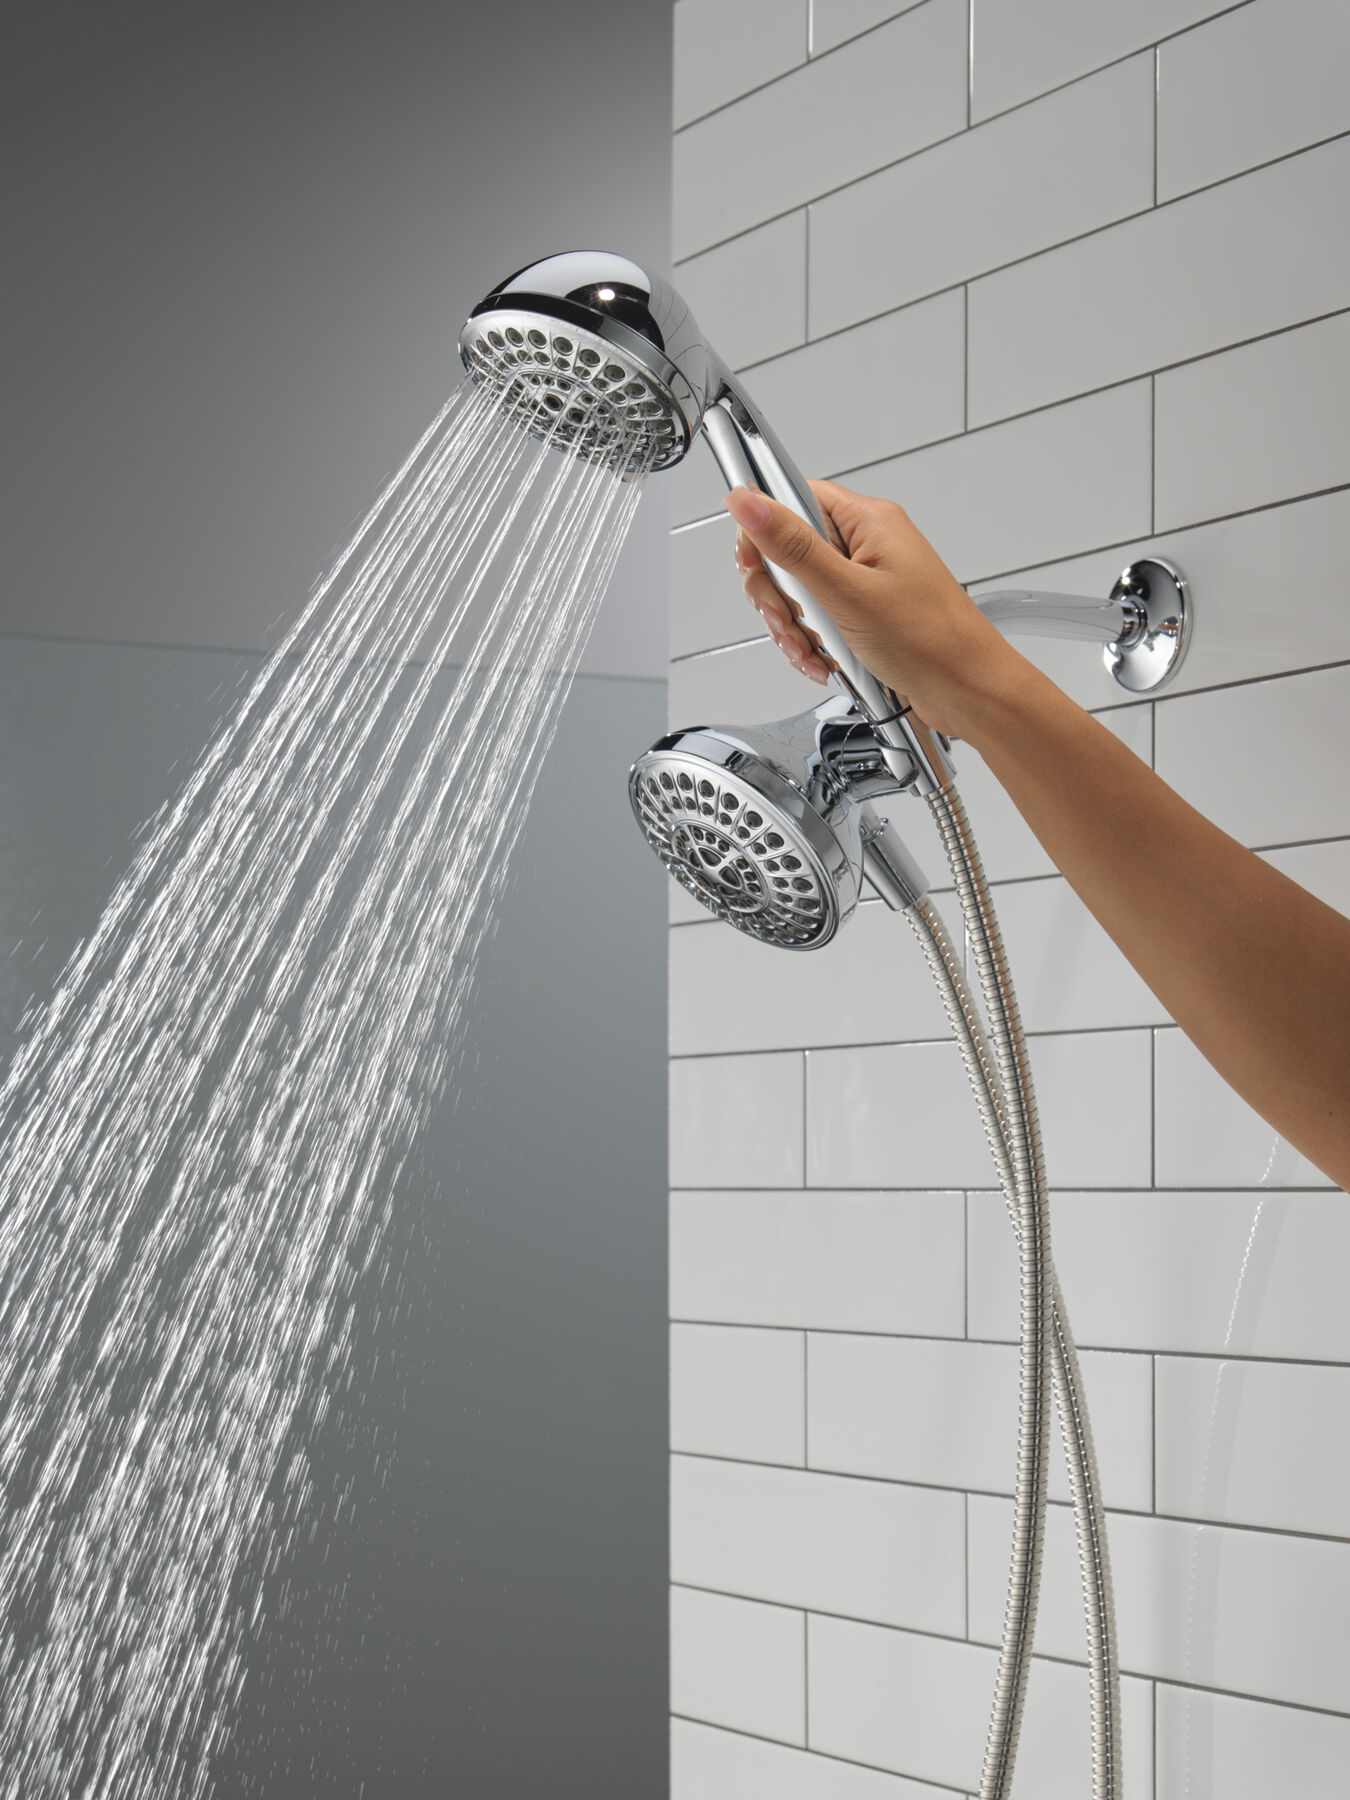  Rain-X Shower Door Cleaner & Water Repellent Combo for